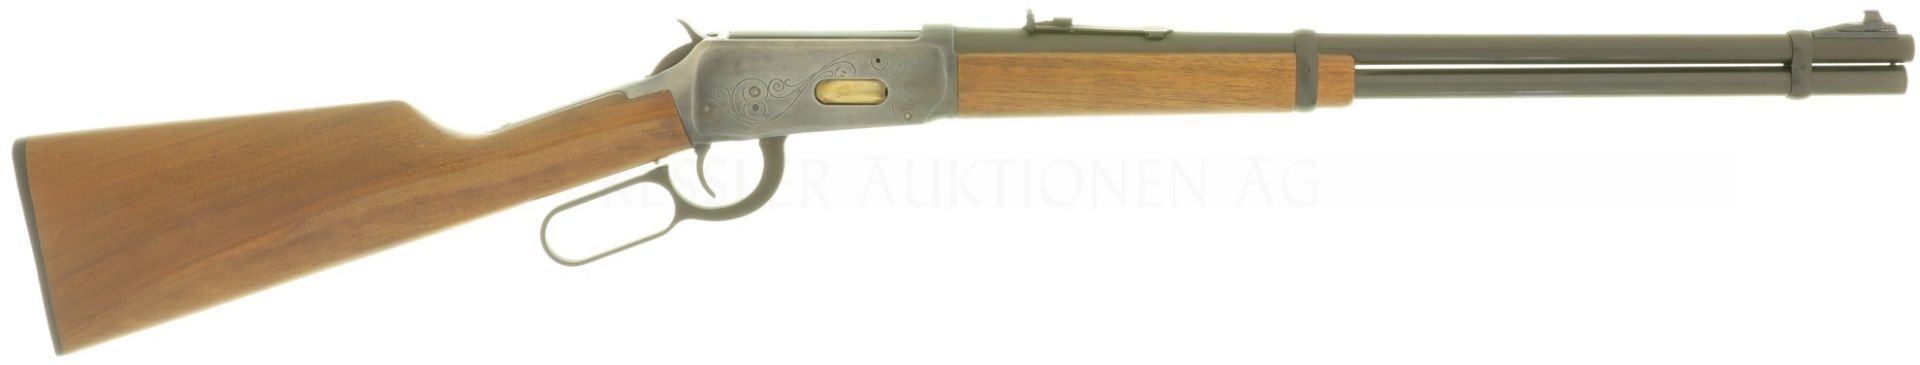 Unterhebelrepetierbüchse, Winchester 94, Antique, Kal. .30-30Win.